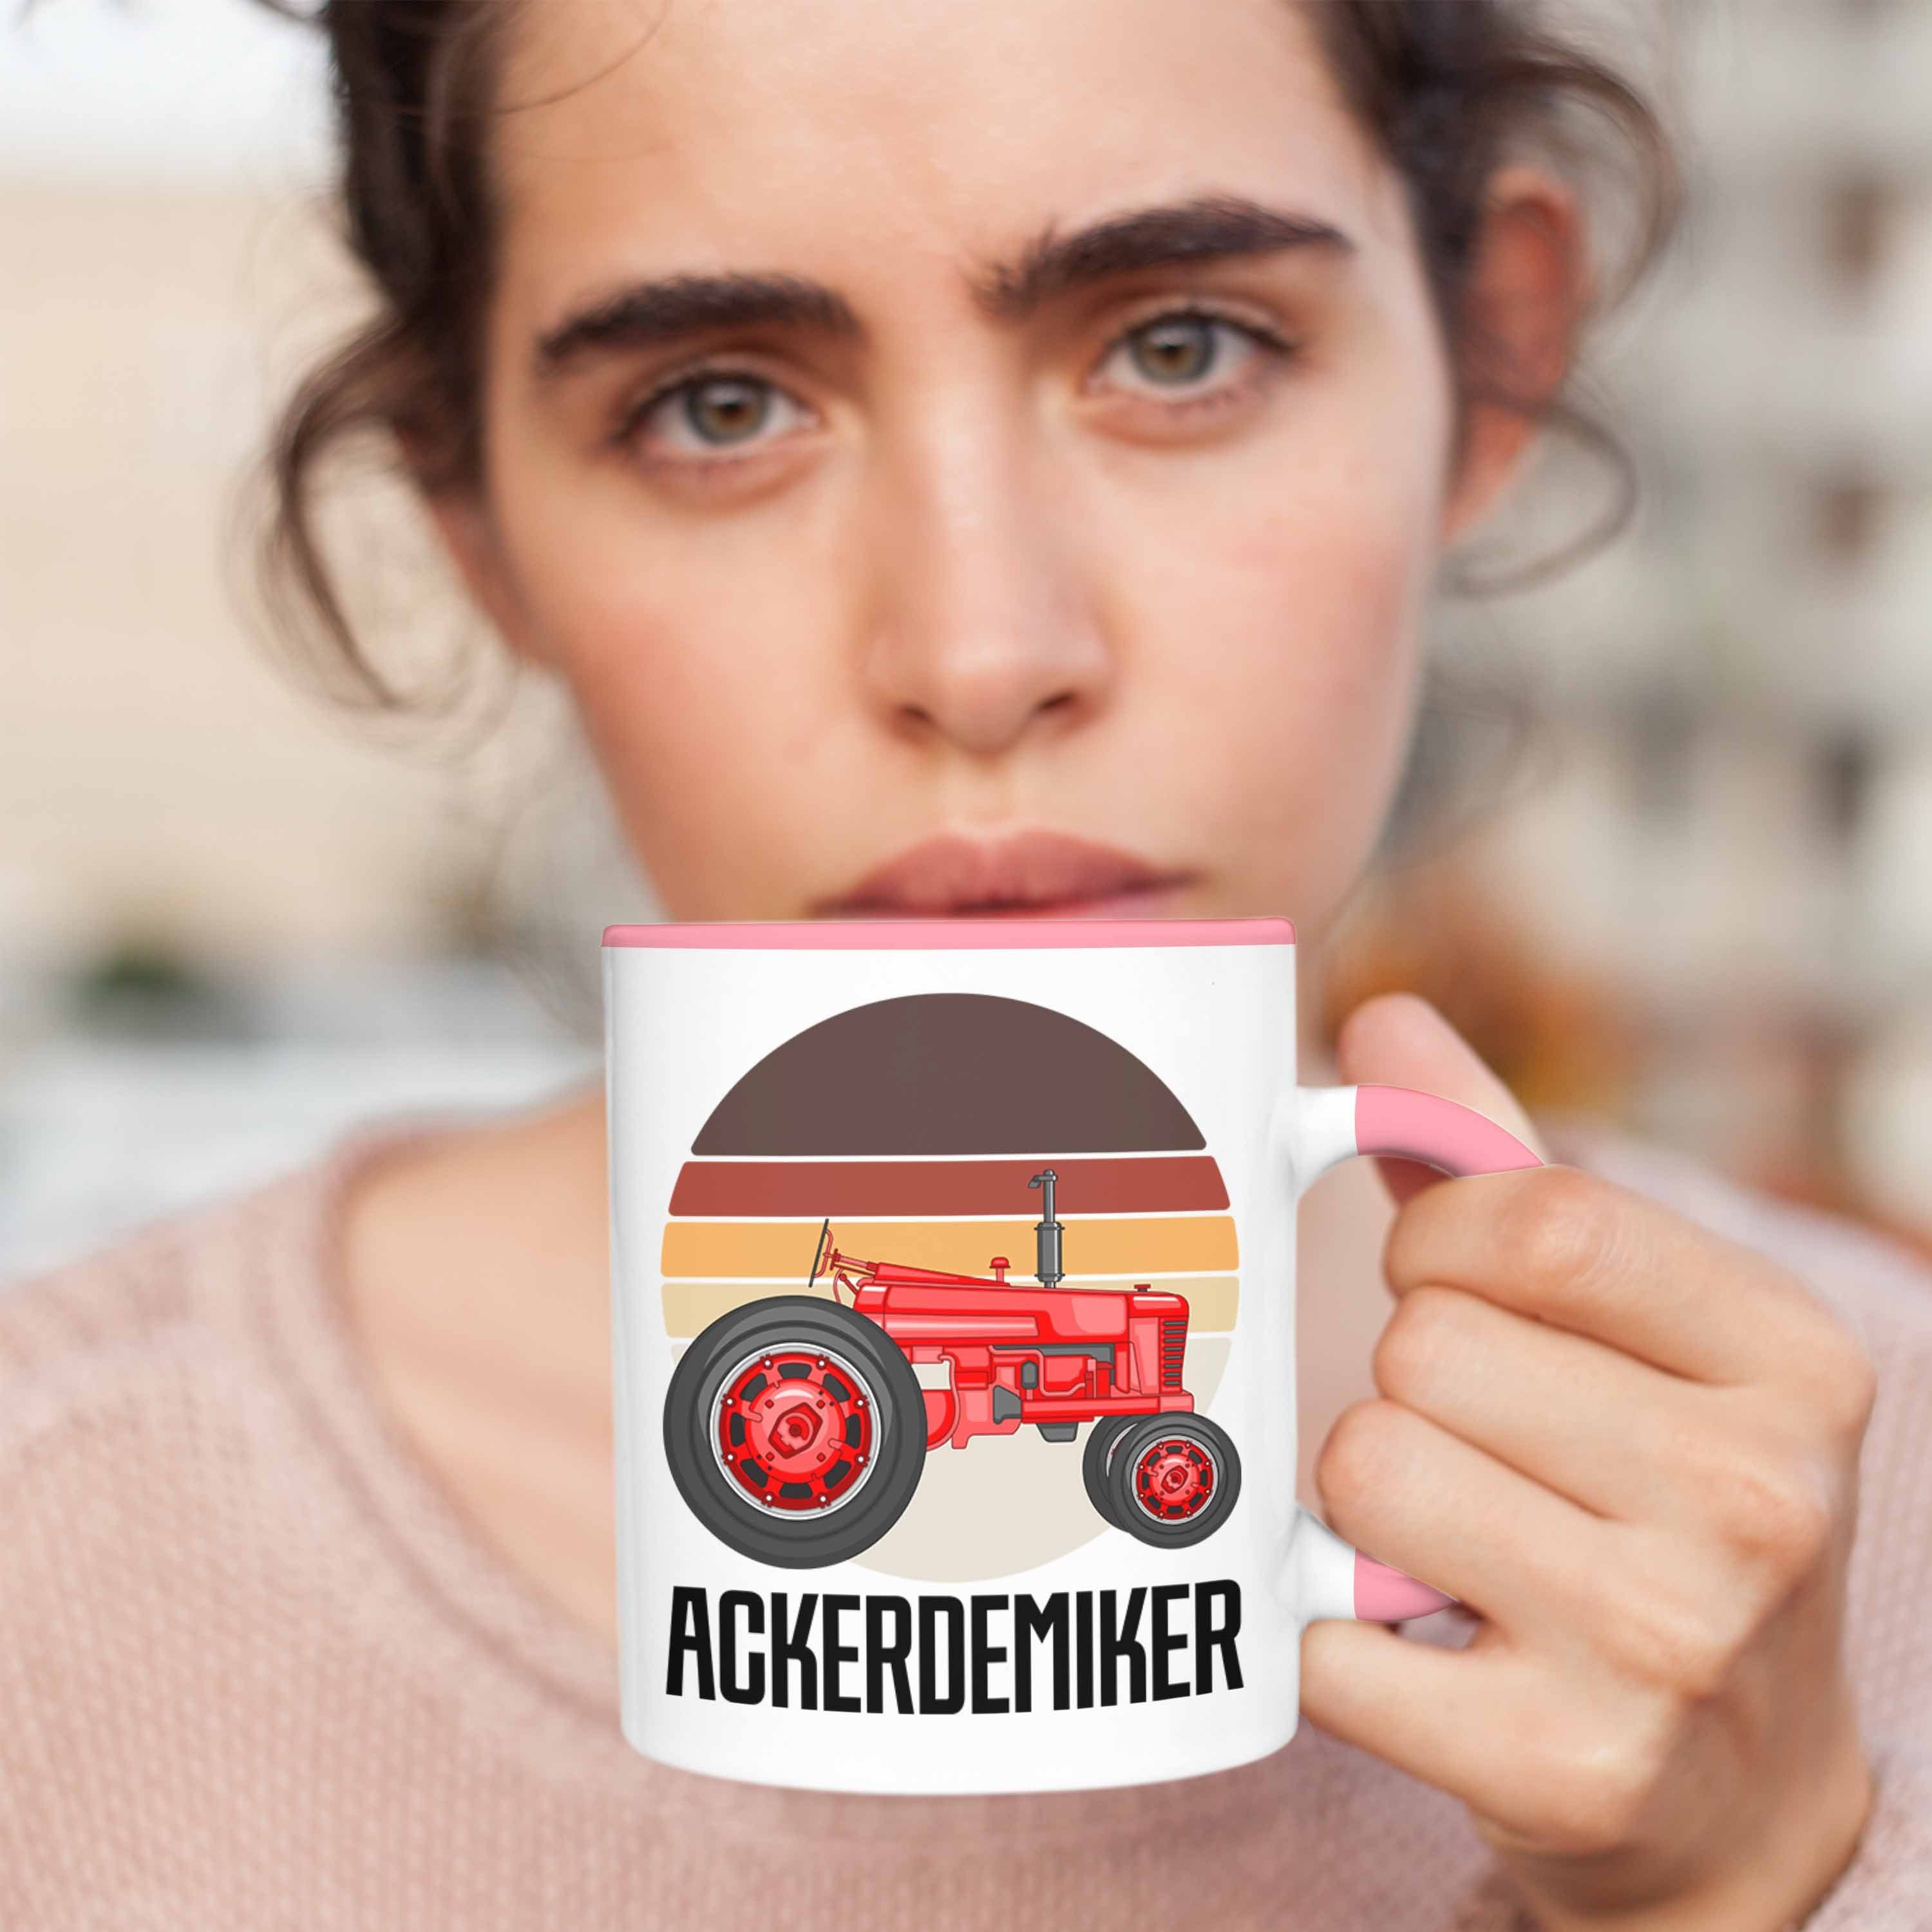 Rosa Ackerdemiker Trendation Tasse Tasse für Ba Geschenkidee Landwirt Geschenk Kaffee-Becher